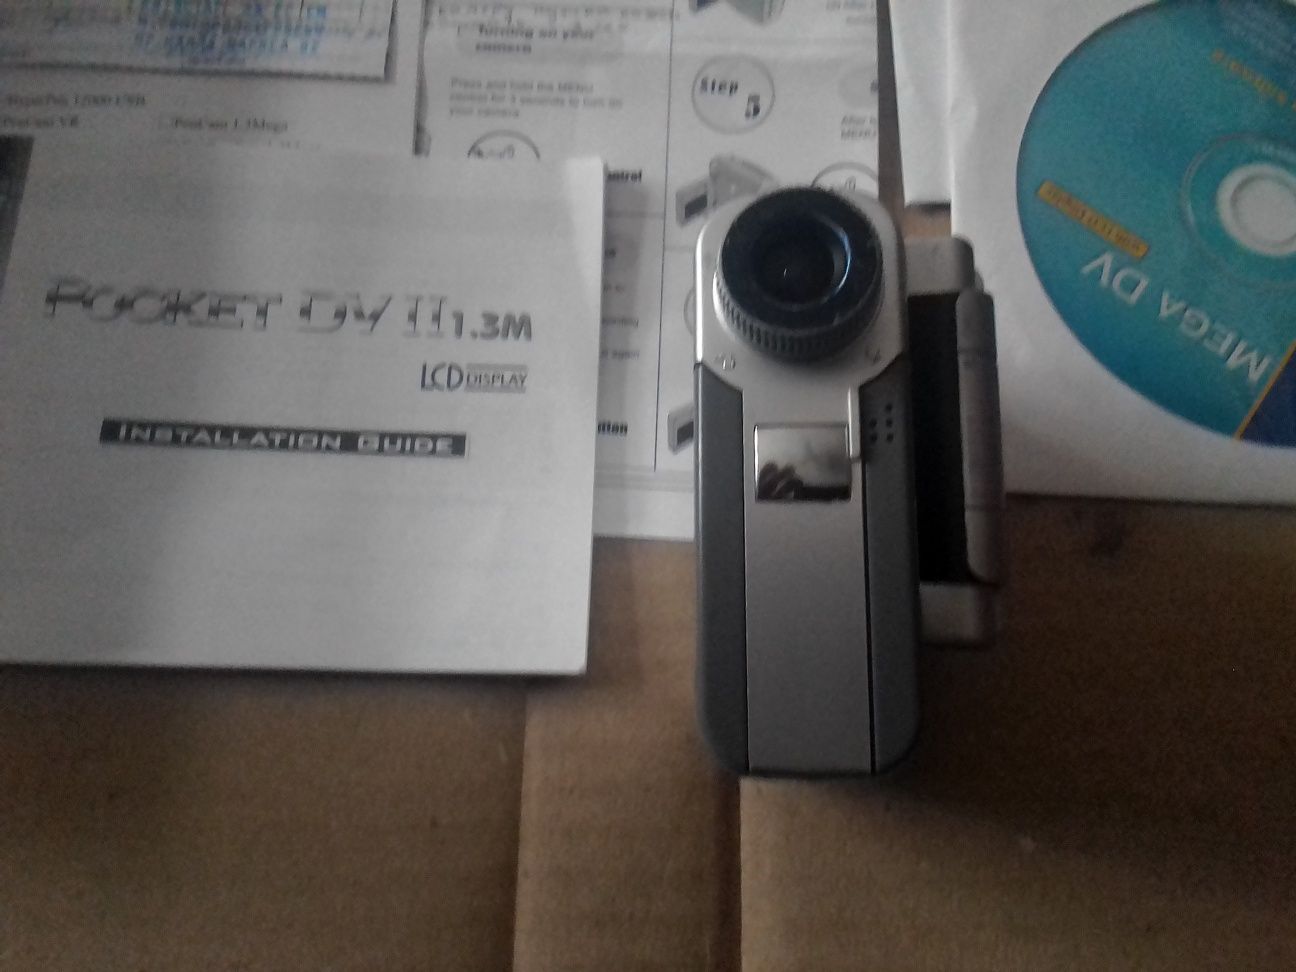 Відео камераAlRTEK DV II 1,3м.ціна200г,б/у.невключається.